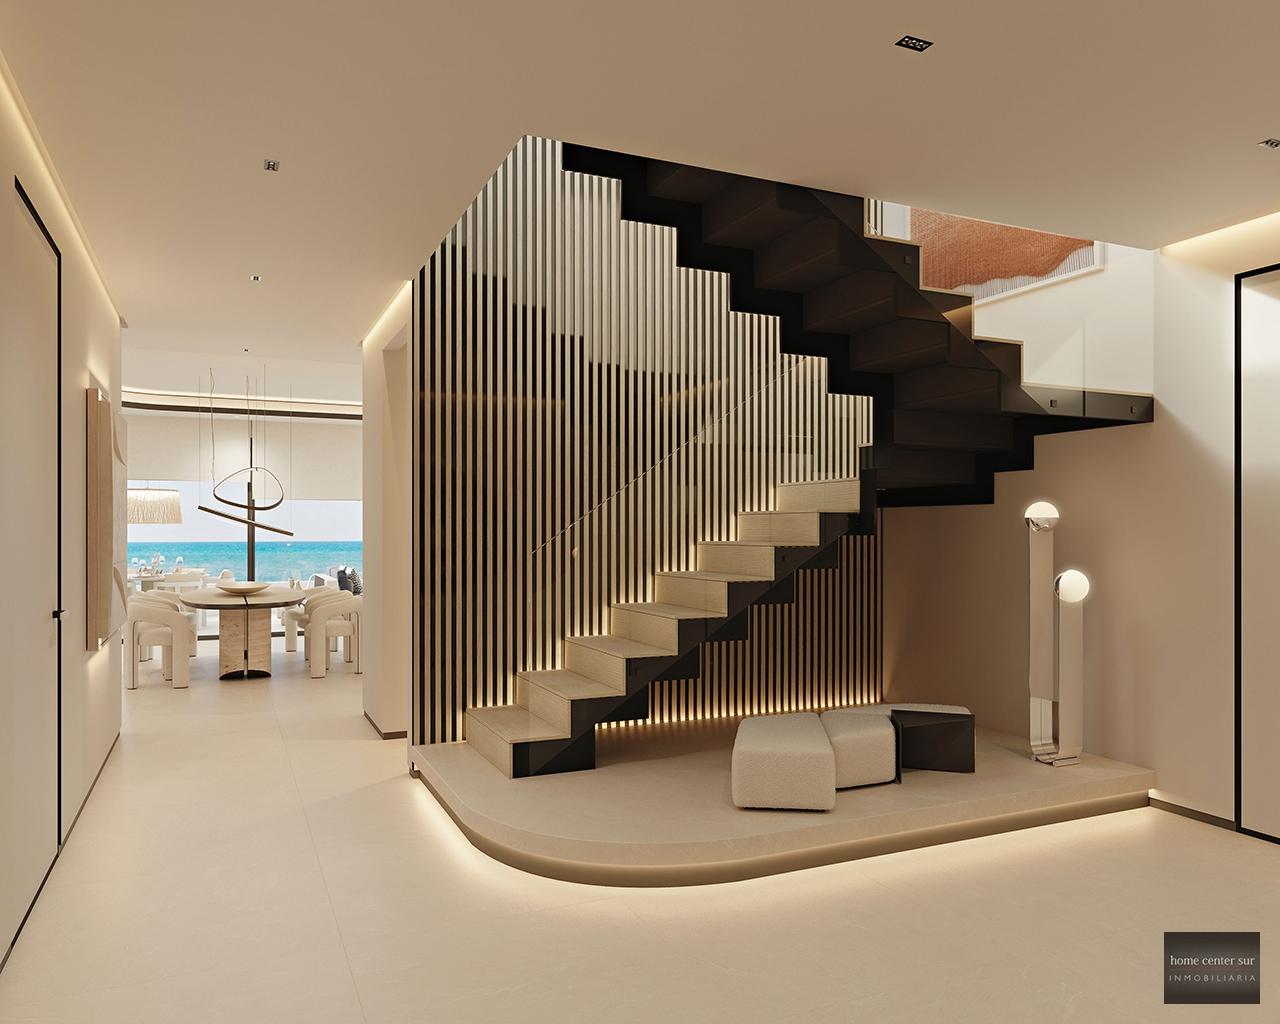 Luxuriöse Apartment zum verkauf in calle Bonanza 0 (Marbella), 2.600.000 €